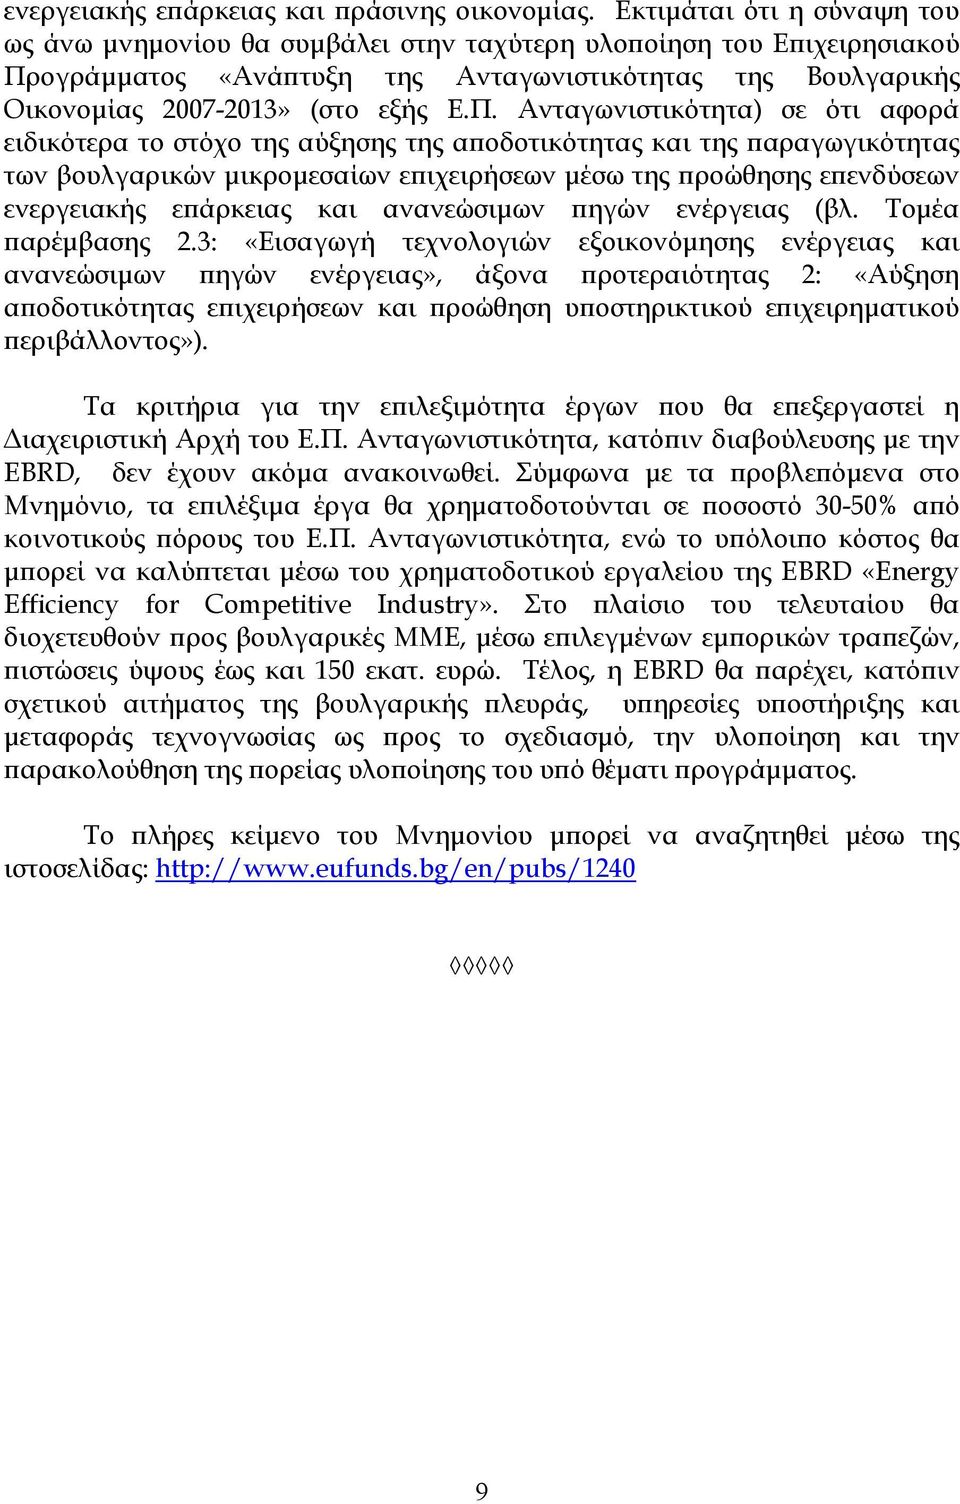 ογράµµατος «Ανάϖτυξη της Ανταγωνιστικότητας της Βουλγαρικής Οικονοµίας 2007-2013» (στο εξής Ε.Π.